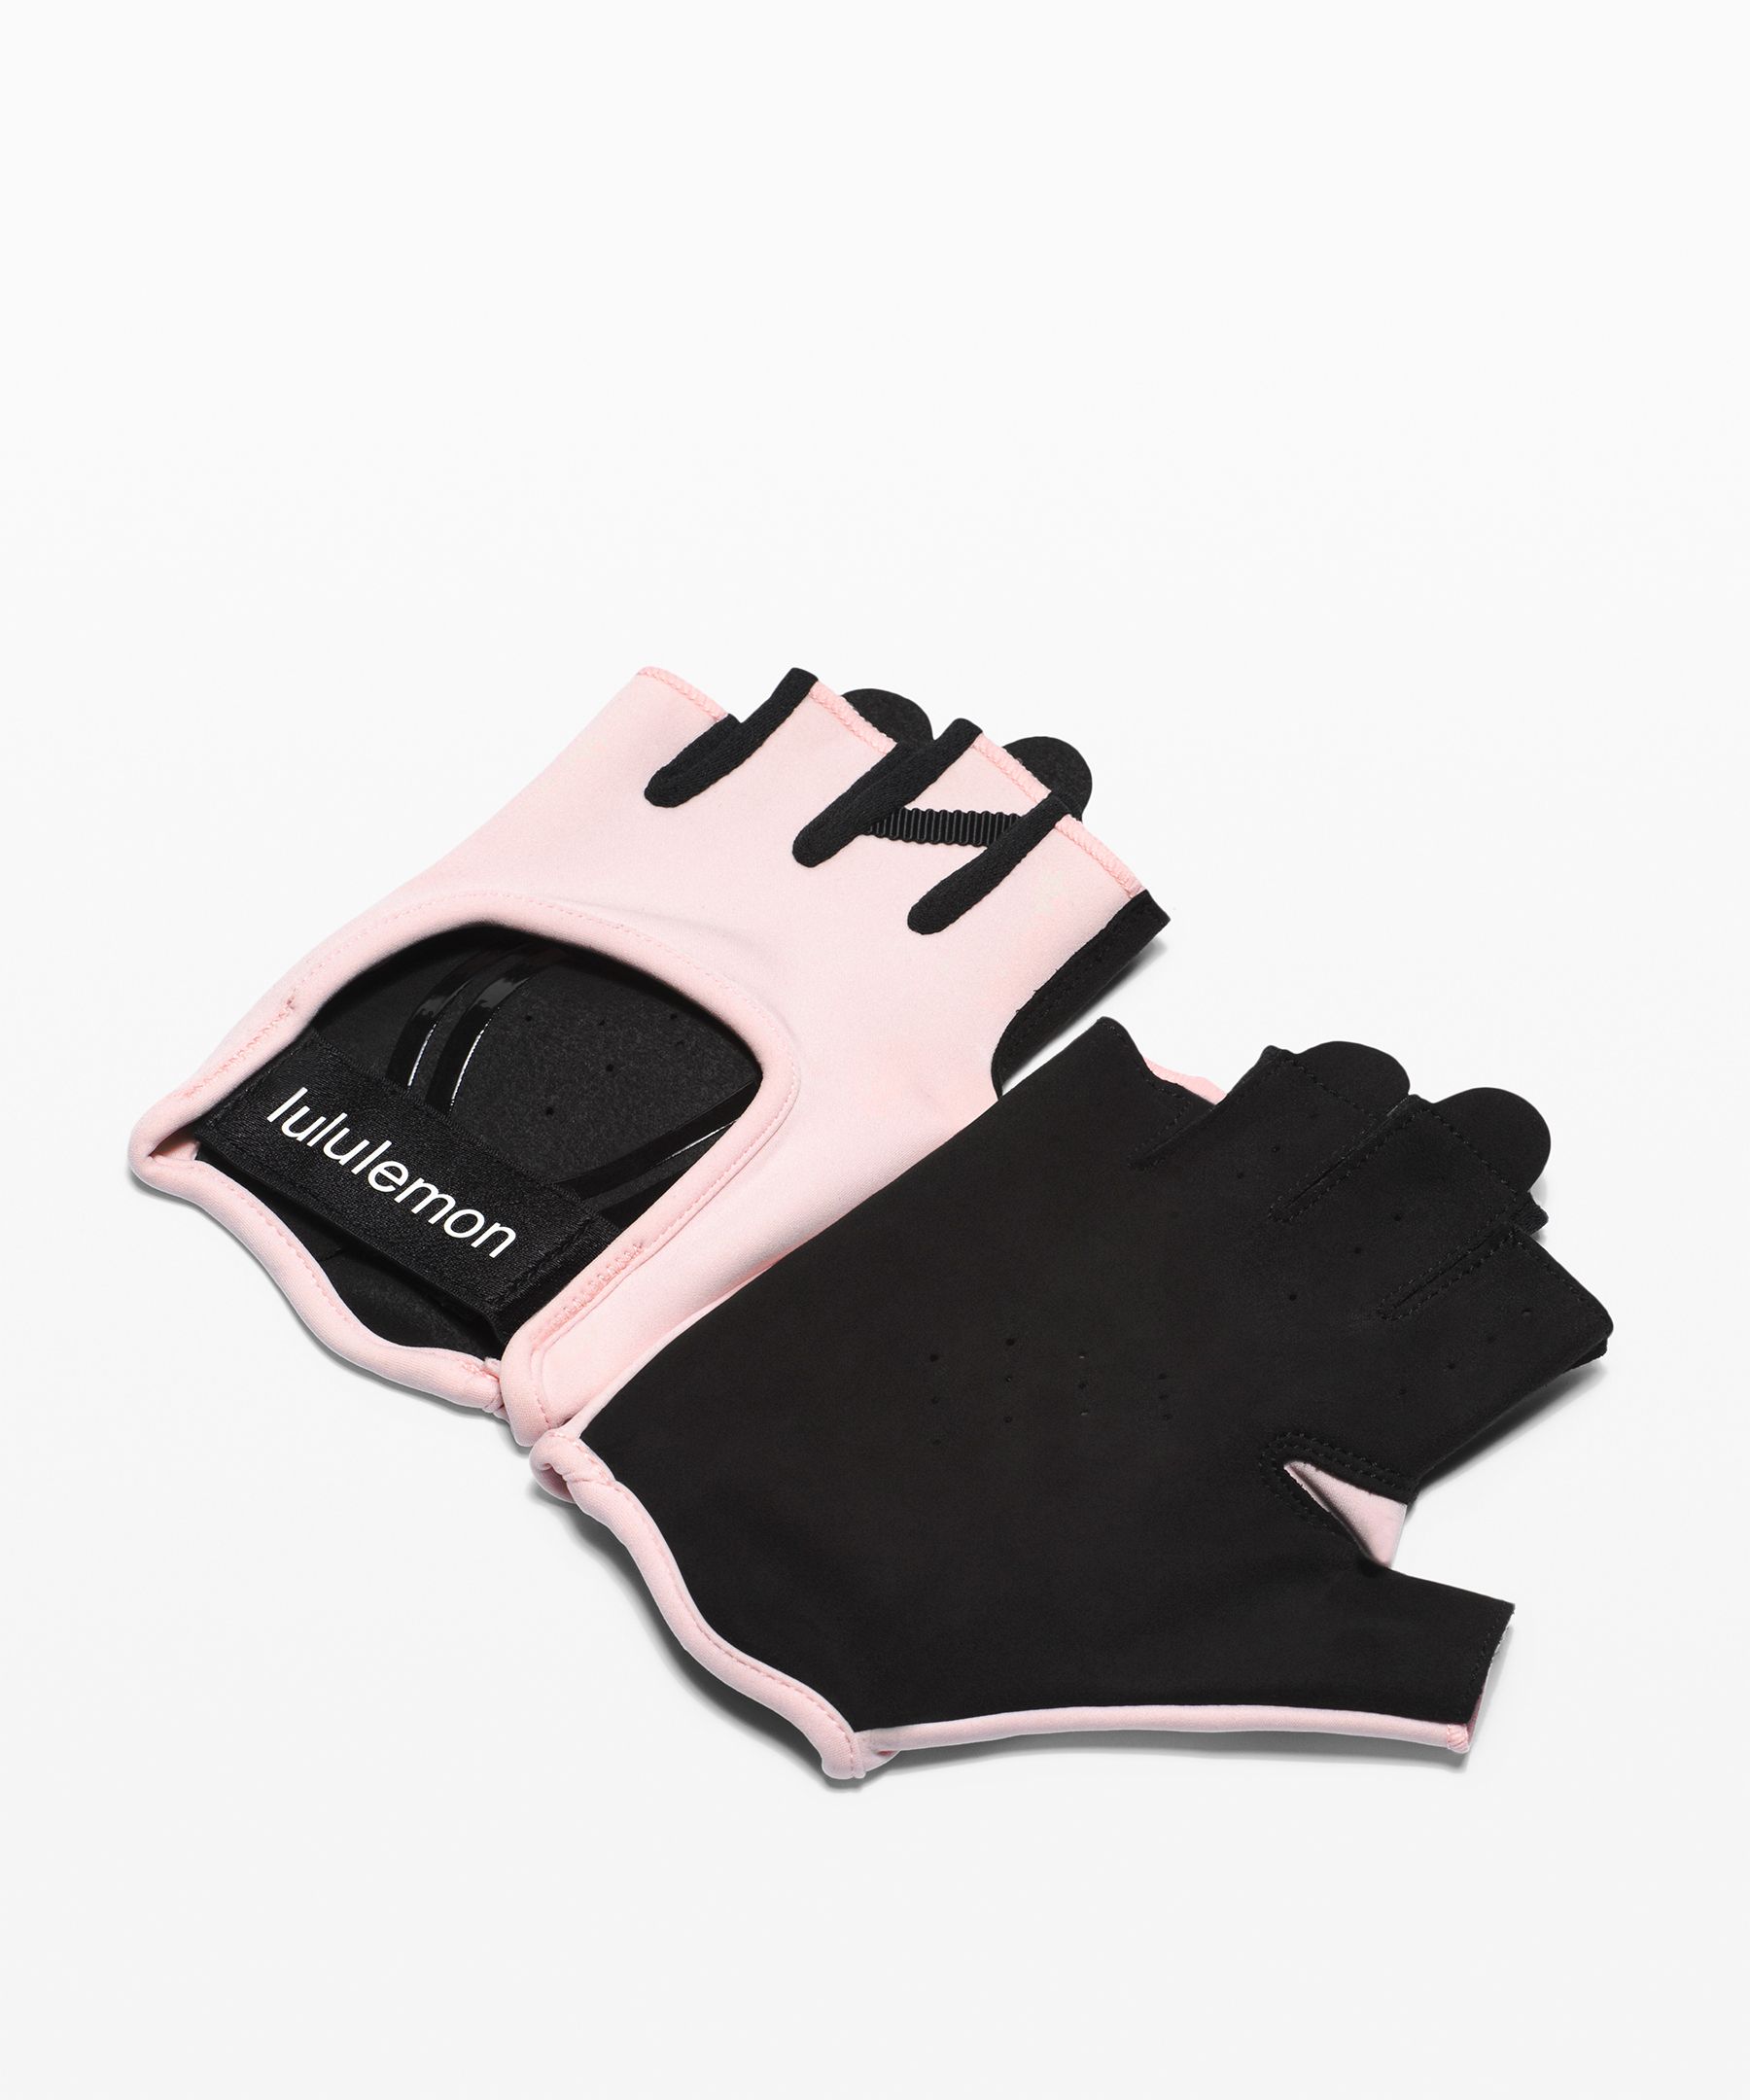 lululemon gym gloves